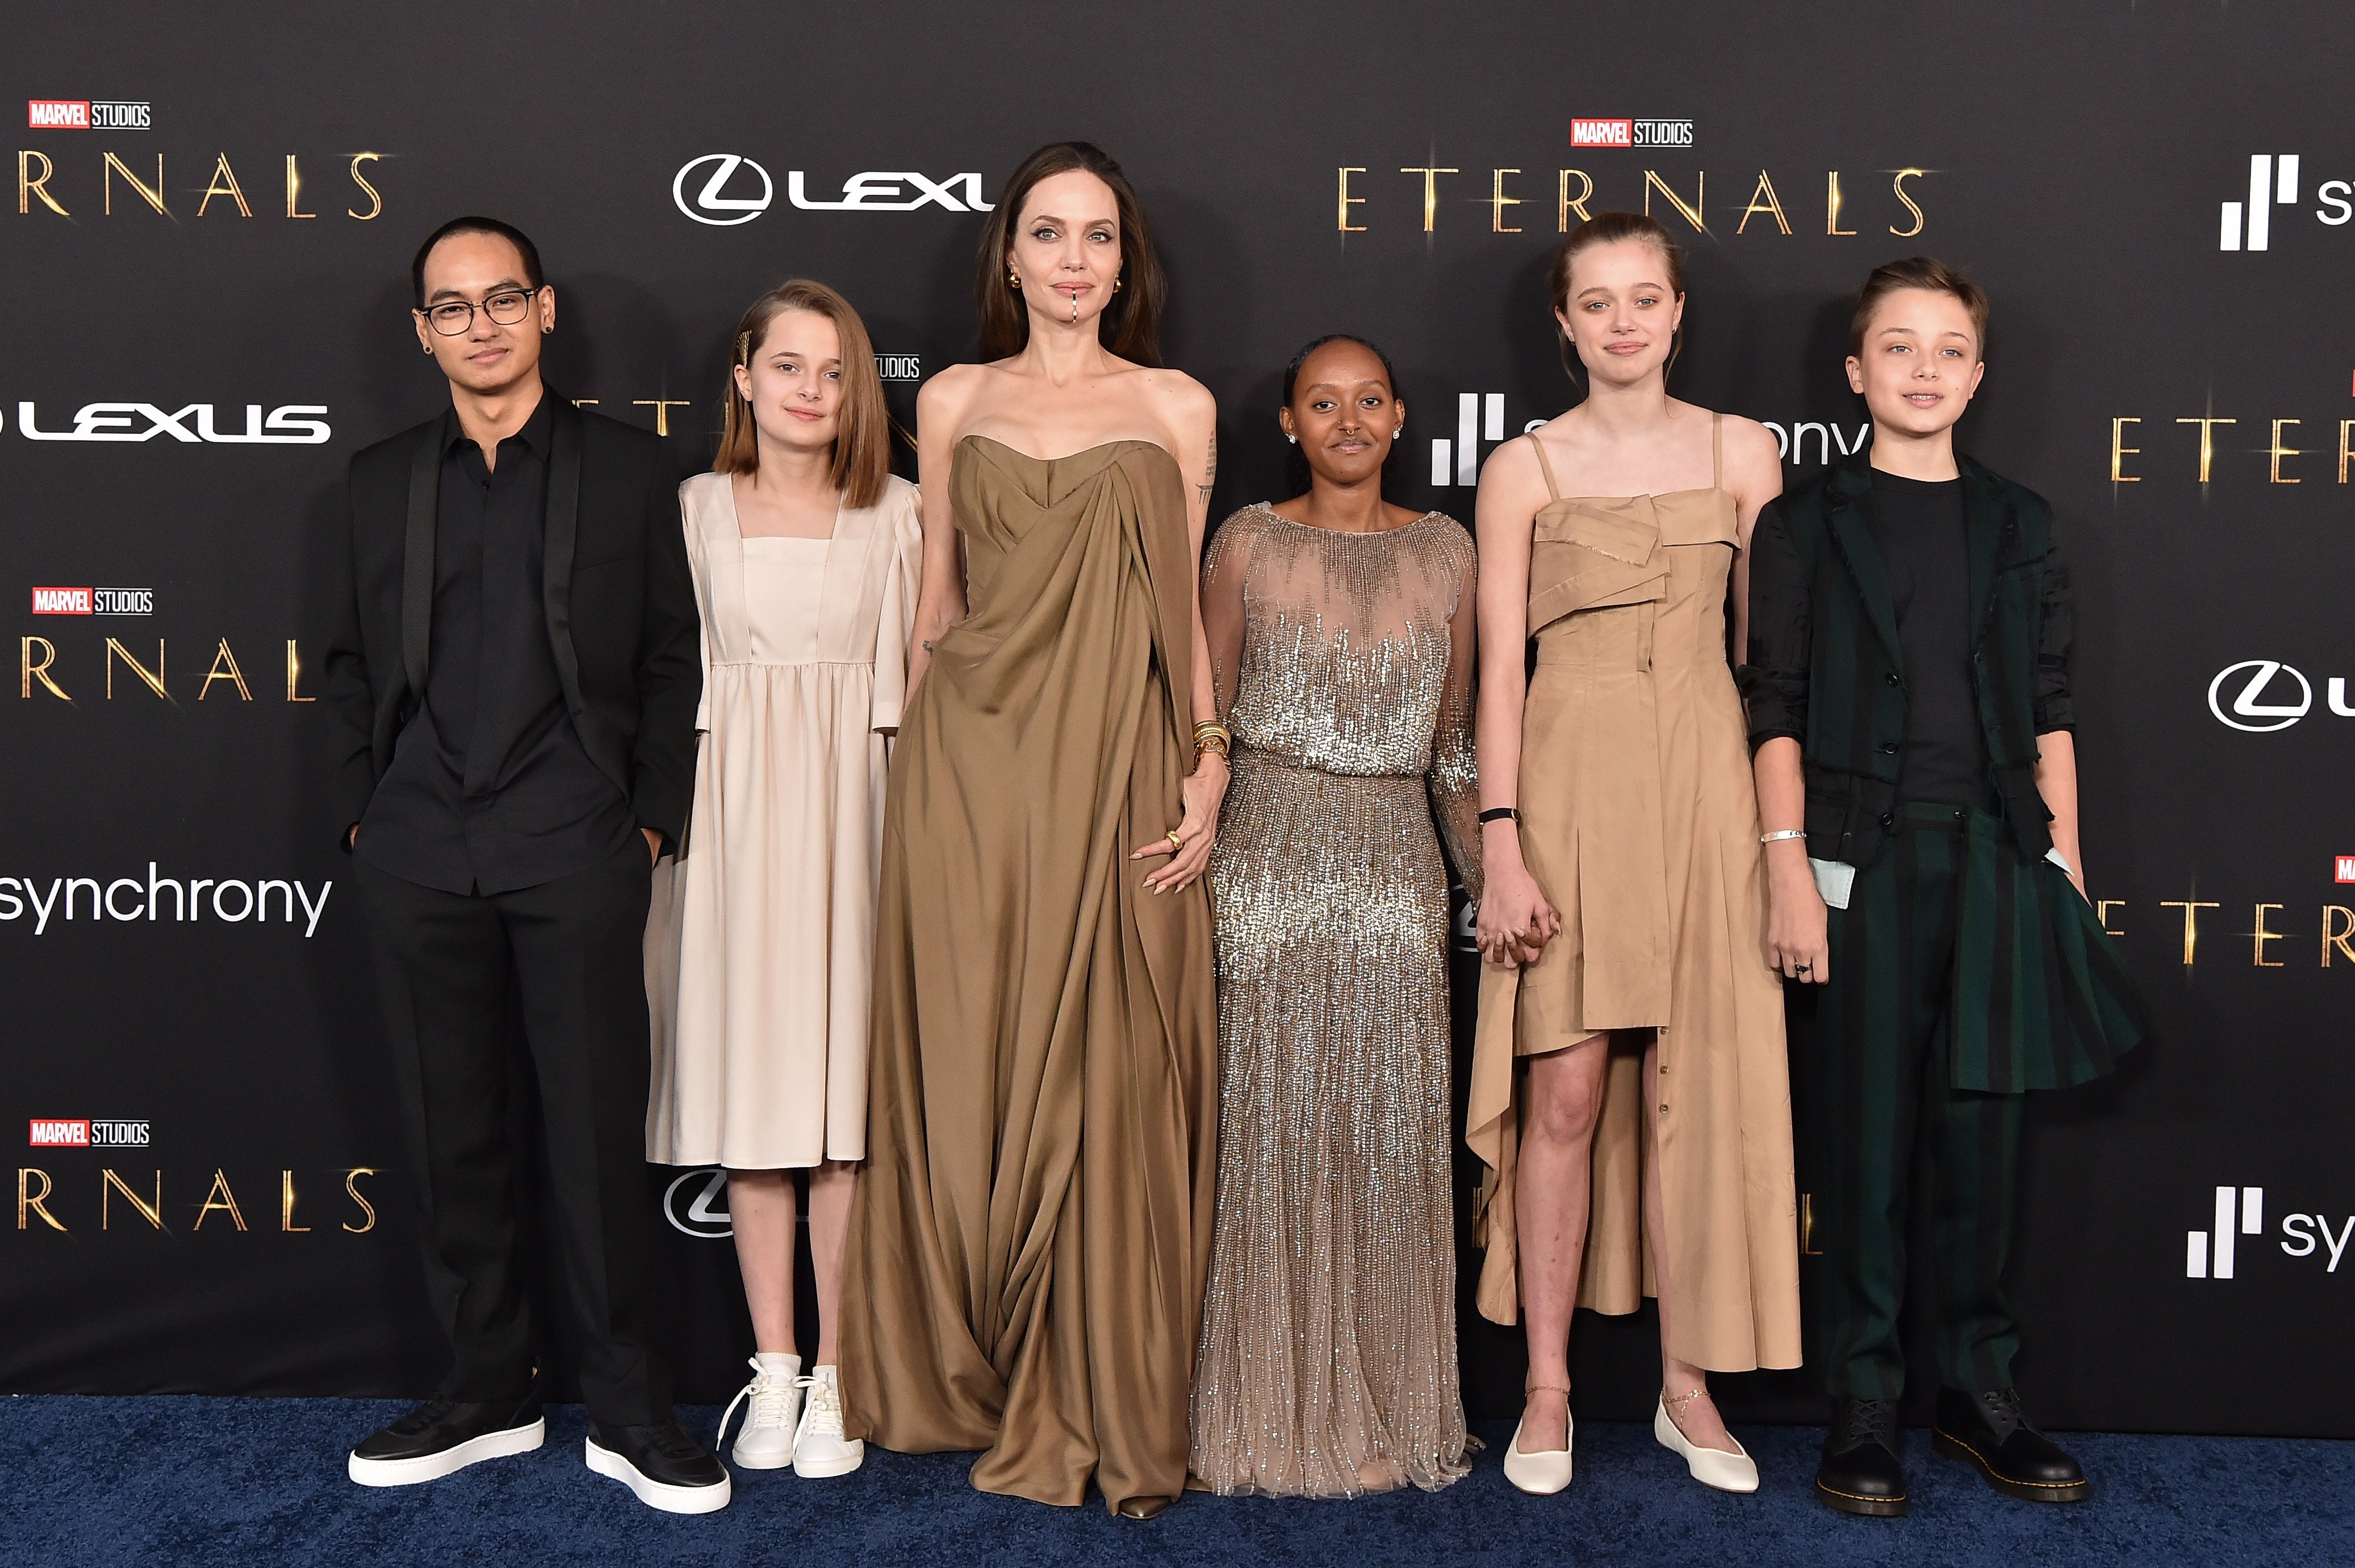 Maddox, Vivienne, Angelina Jolie, Knox, Shiloh y Zahara Jolie-Pitt en el estreno de "Eternals" de Marvel Studios, el 18 de octubre de 2021 en Los Ángeles, California. | Foto: Getty Images